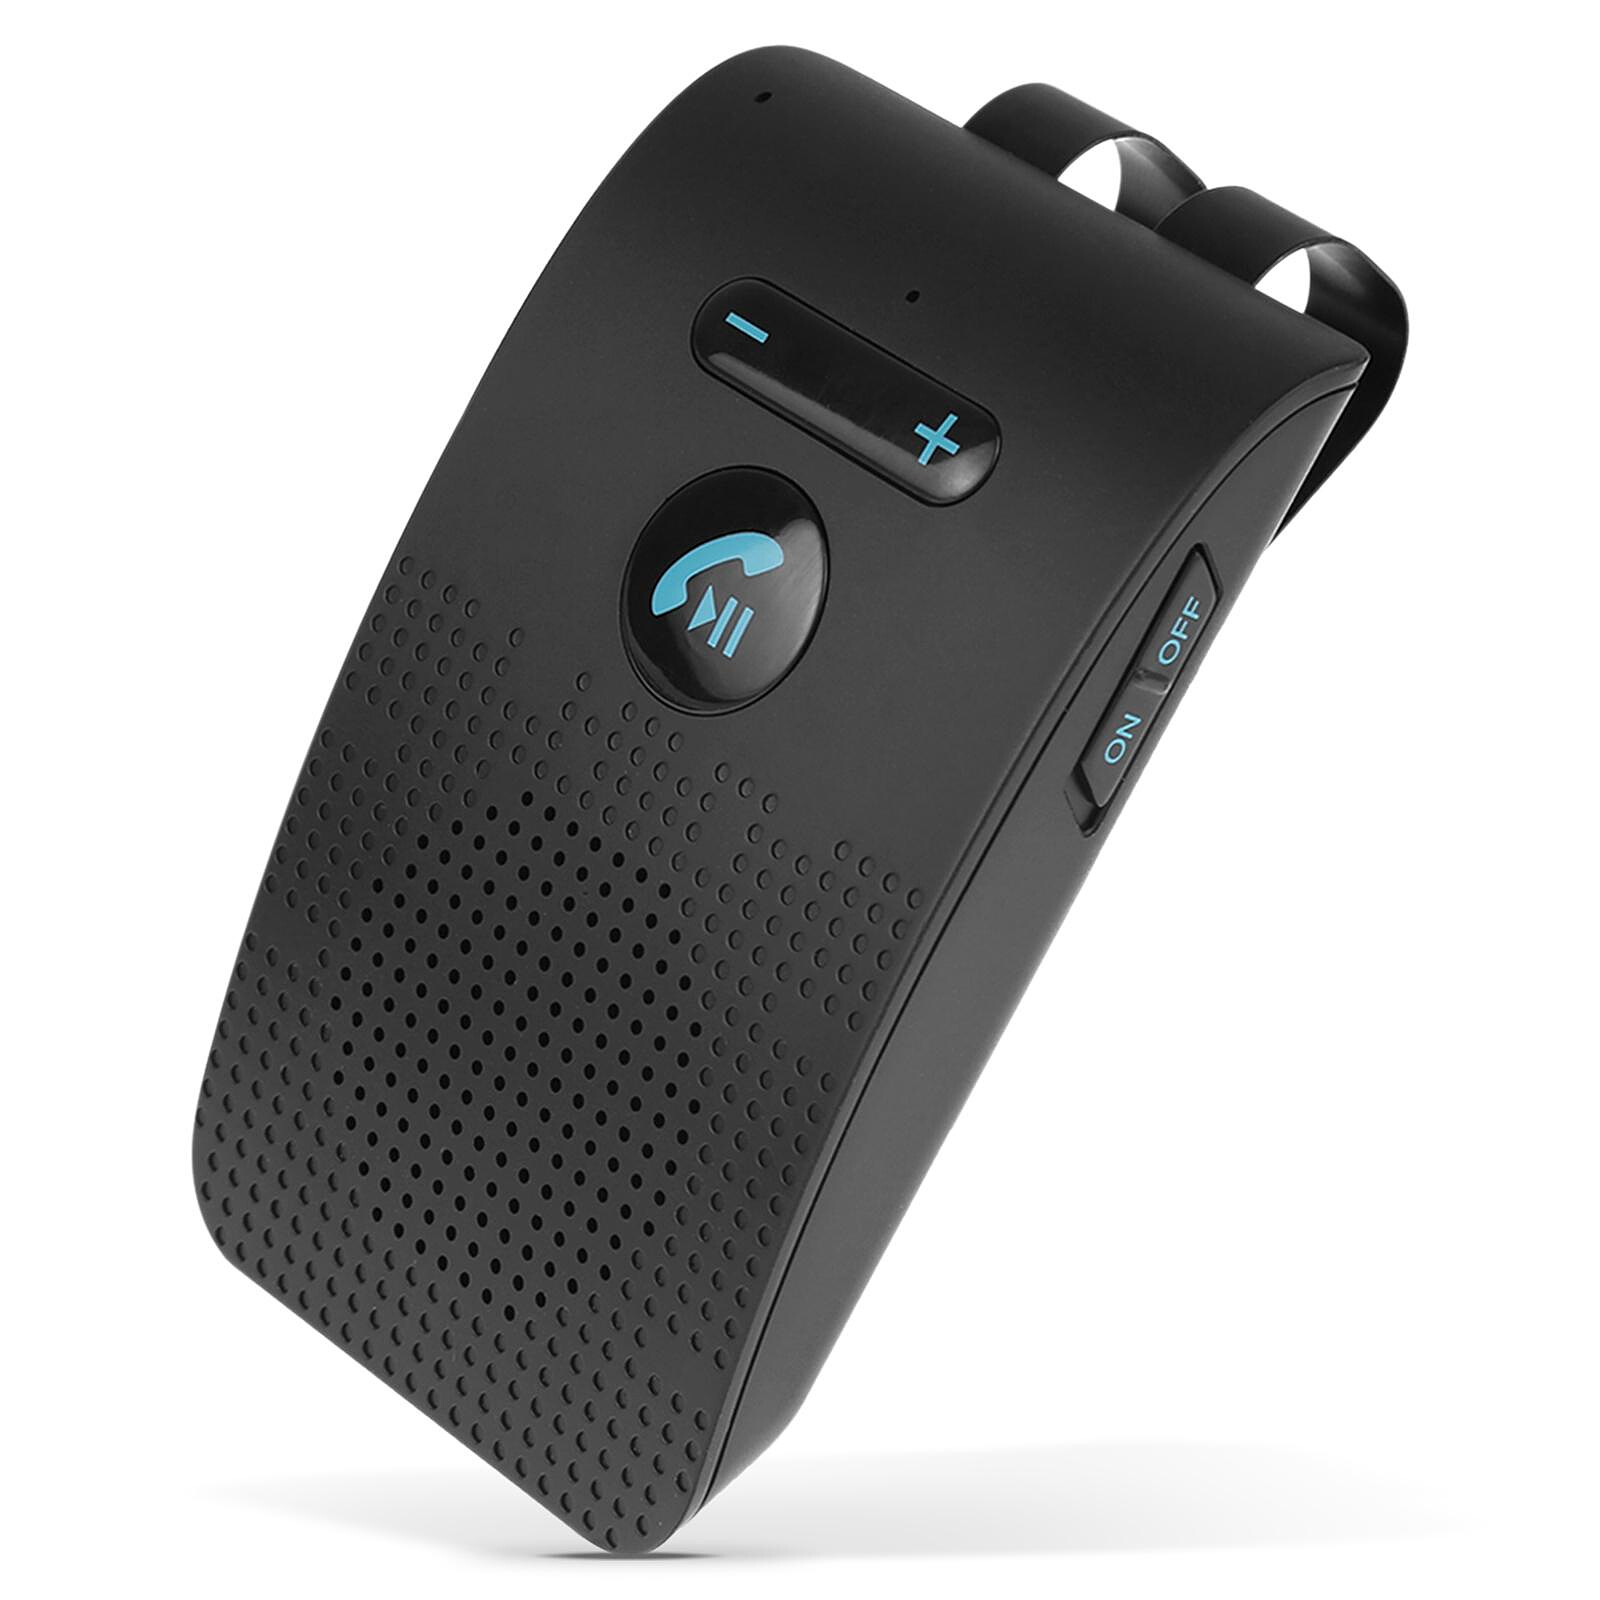 Les meilleurs kits main-libre Bluetooth pour voiture en 2019 - CNET France